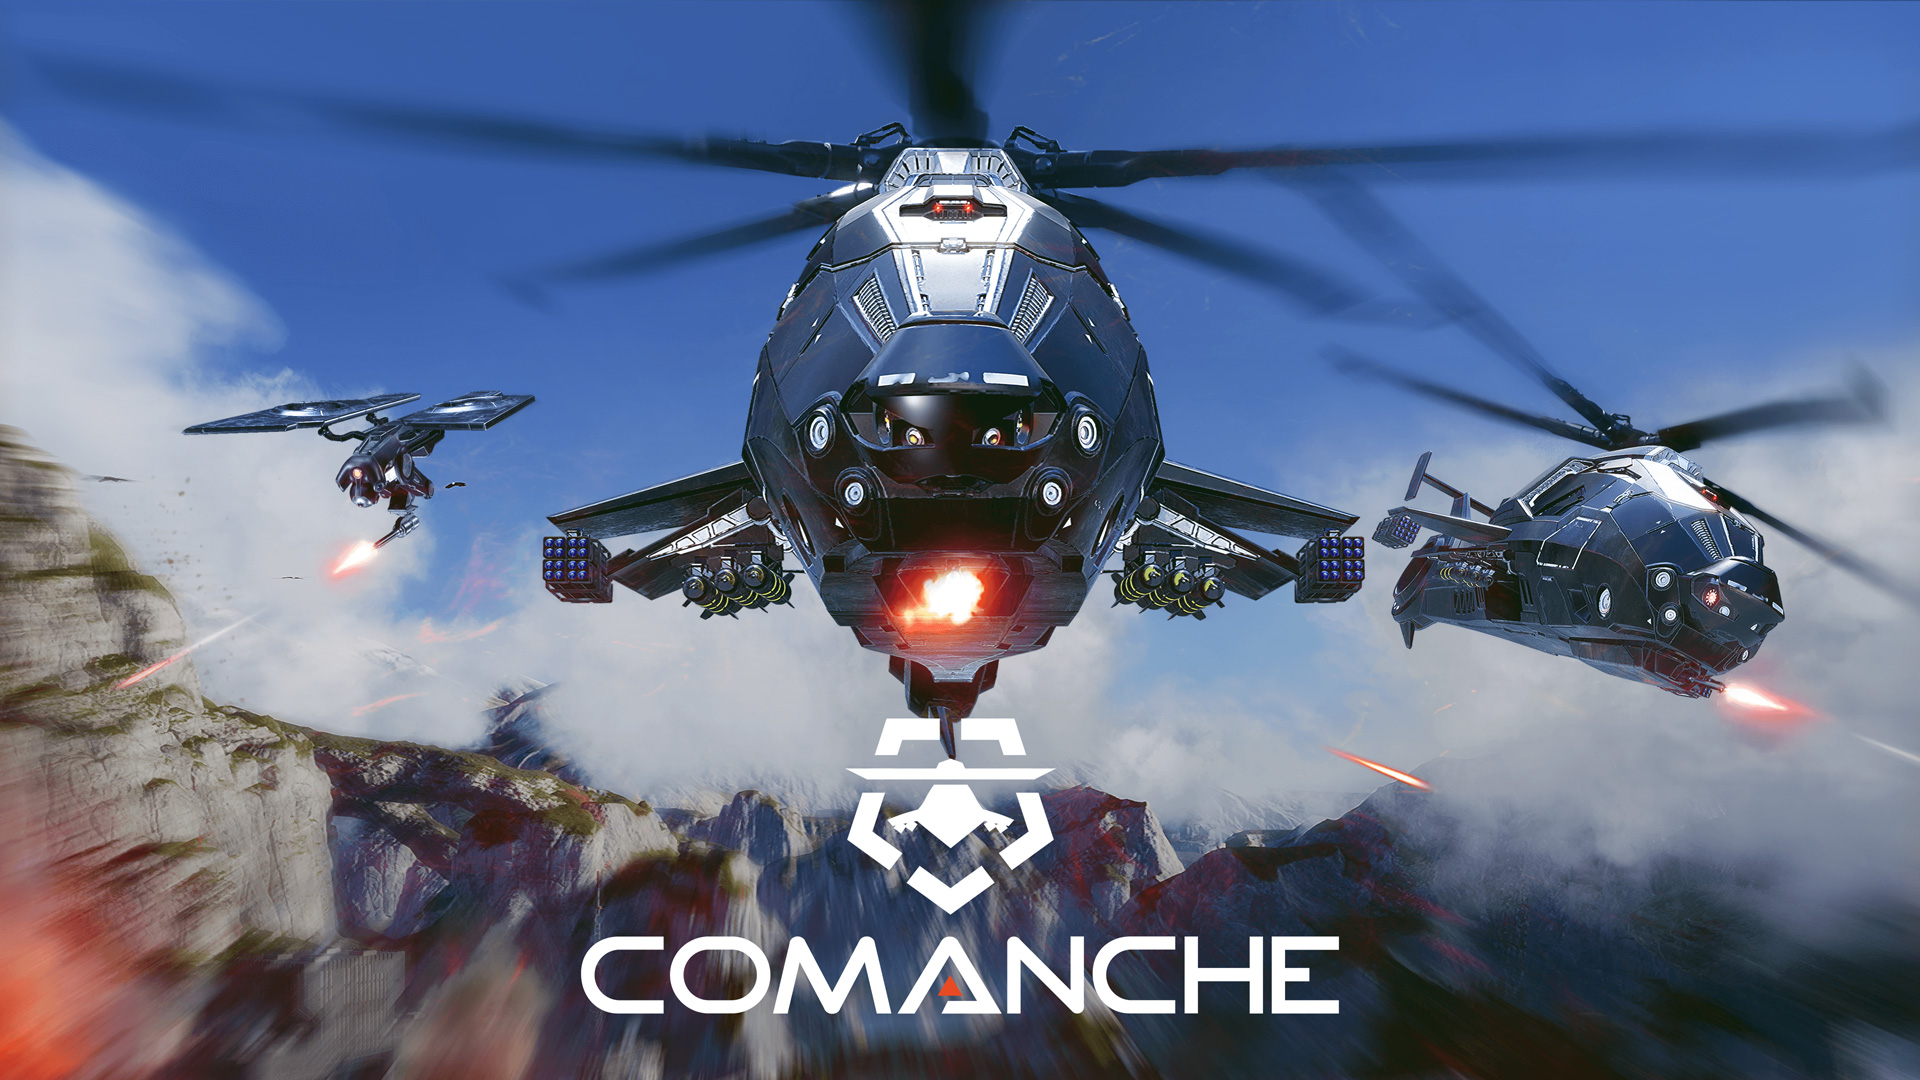 戦闘ヘリコプターの戦いを描くアクションゲーム Comanche コマンチ のアーリーアクセス版がsteamで3月13日にリリース